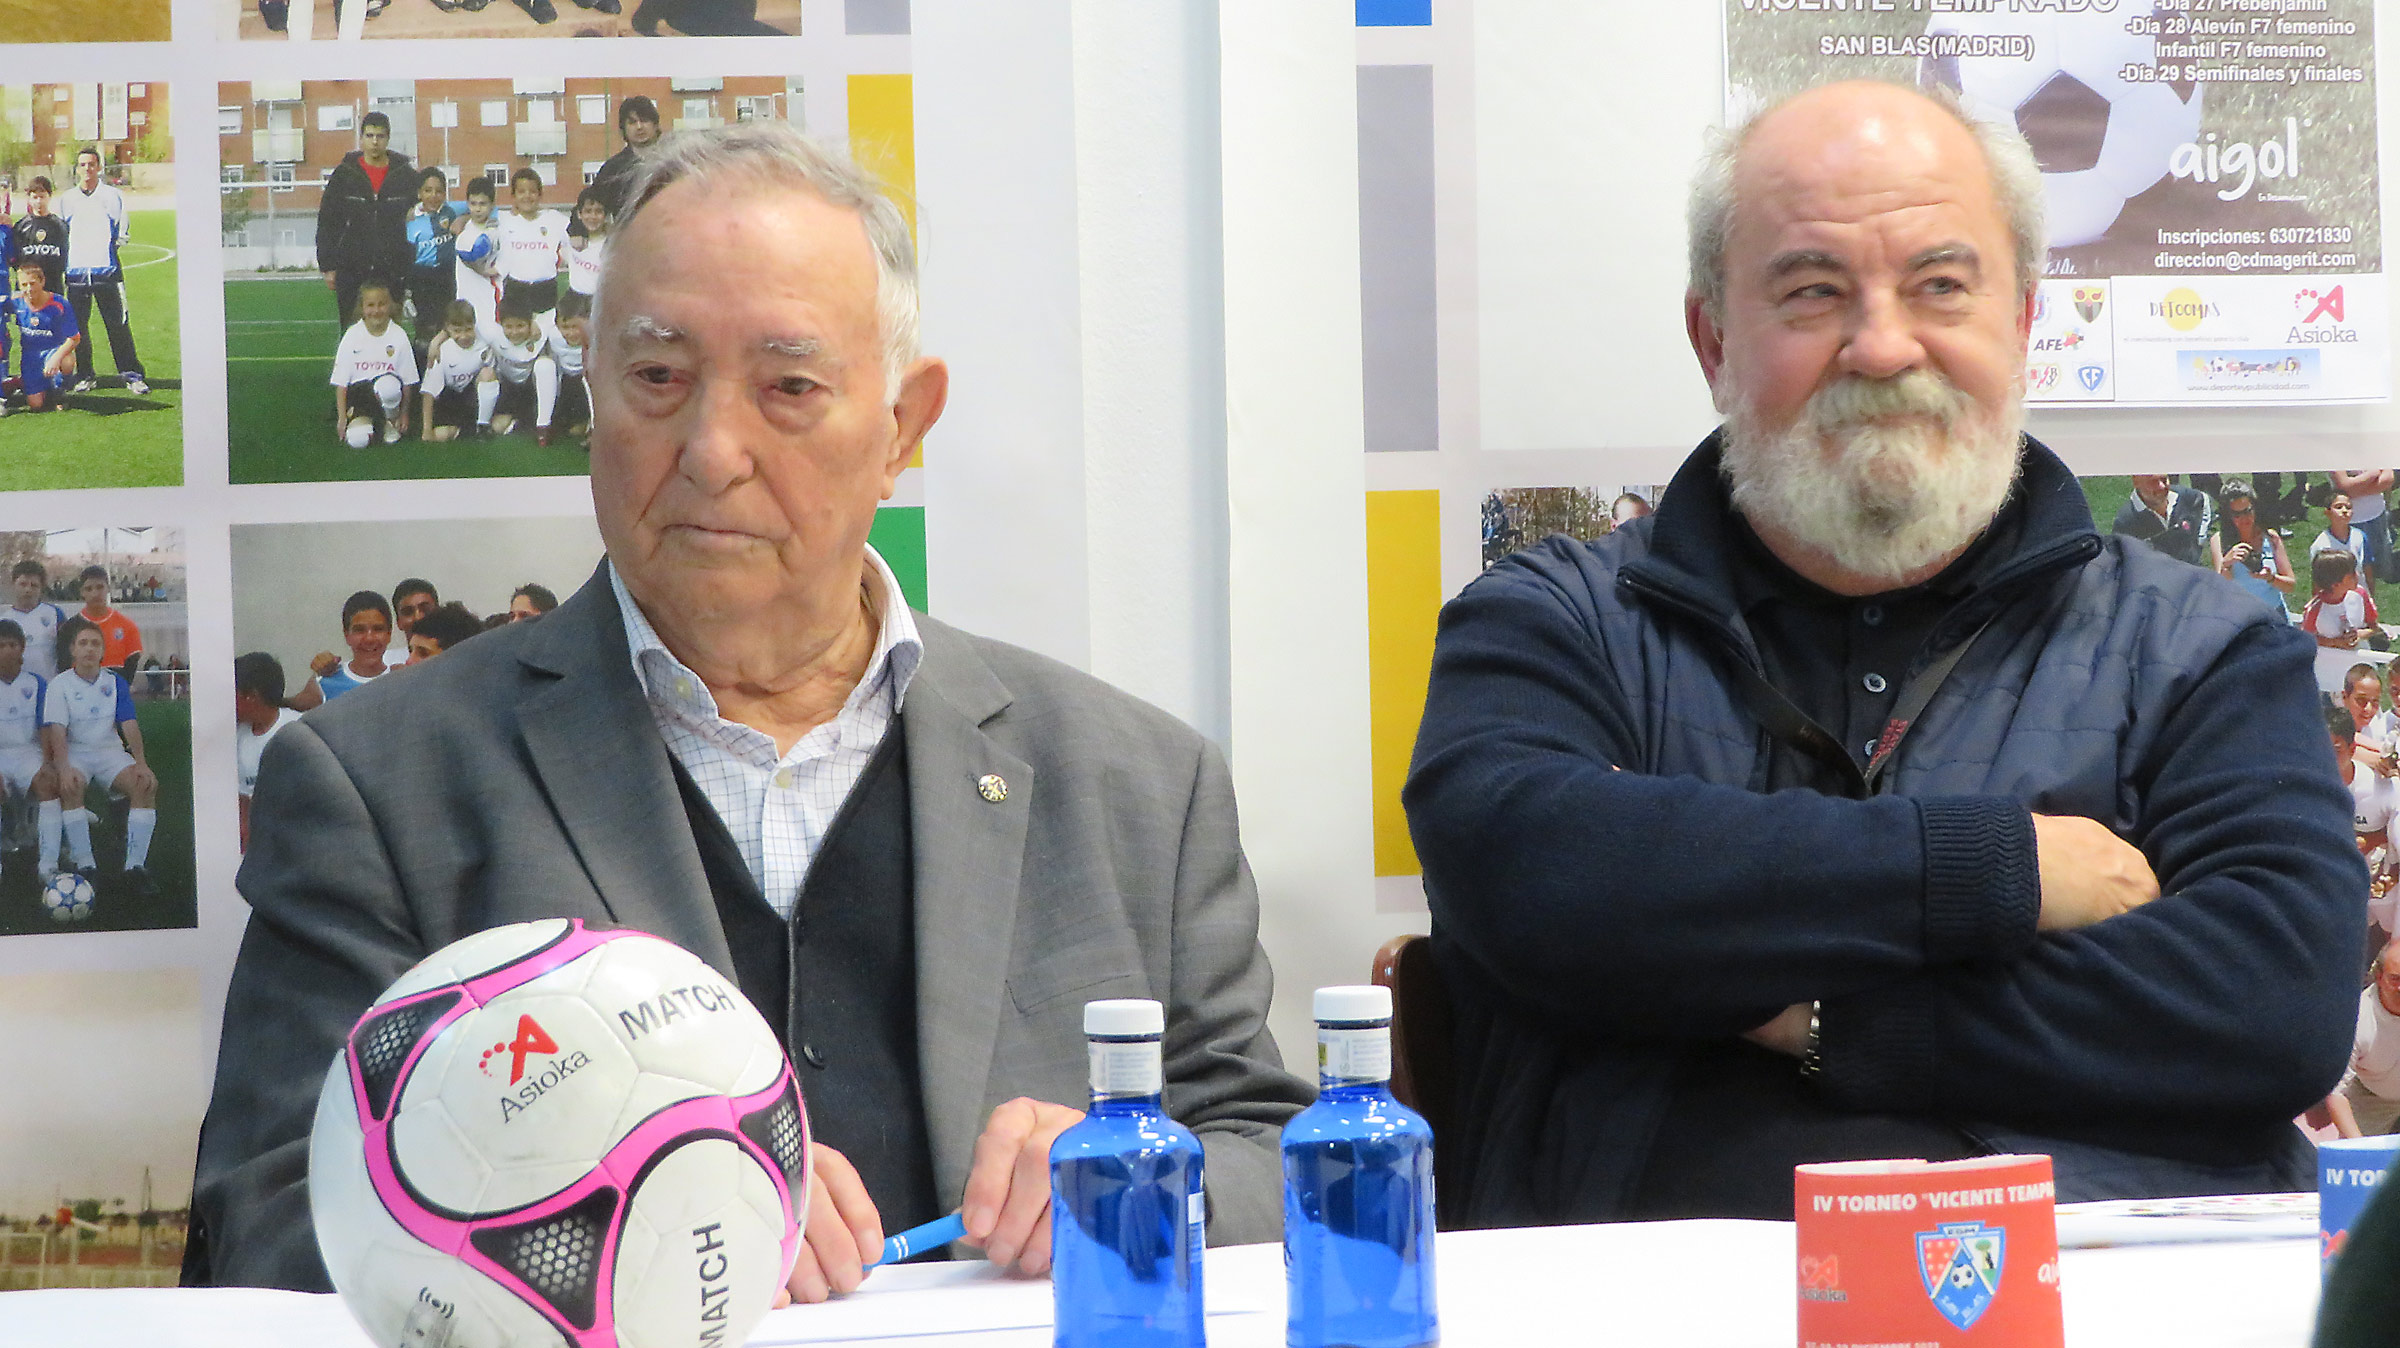 Vicente Temprado y Jesus Gutierrezen el acto de presentacion del torneo